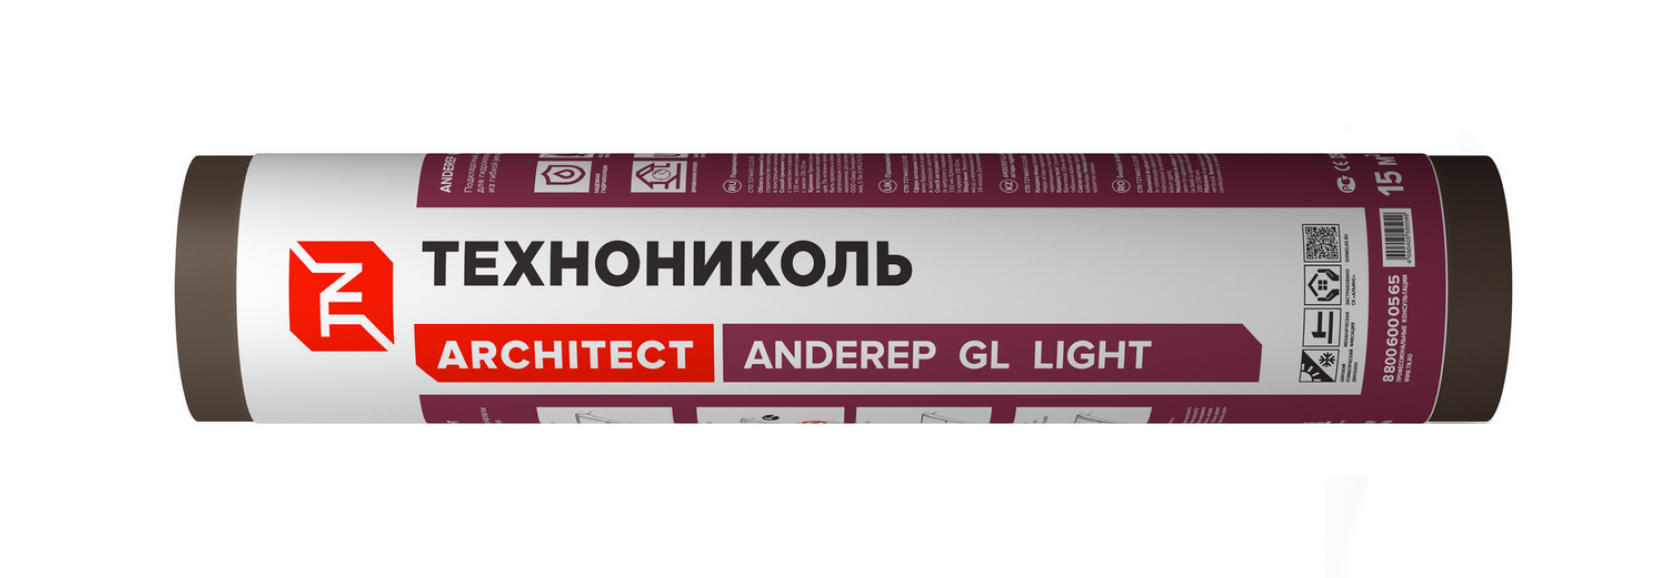 Подкладочный ковер Anderep GL Light 15м2